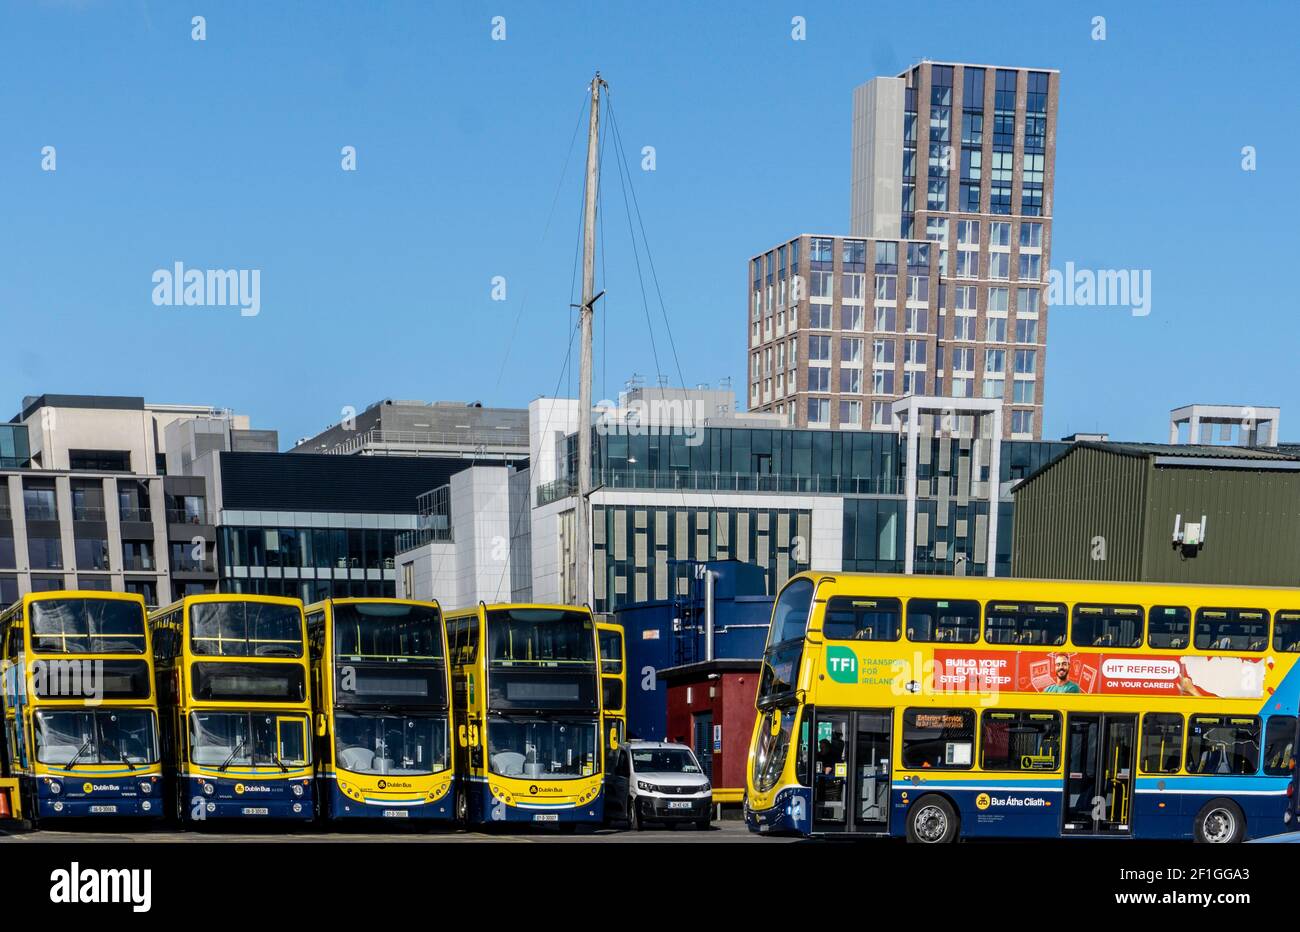 Autobus di Dublino. Il deposito degli autobus Ringsend di Dublino Bus con una linea di autobus Dublino, trascurato dal Capital One Building sul molo. Foto Stock